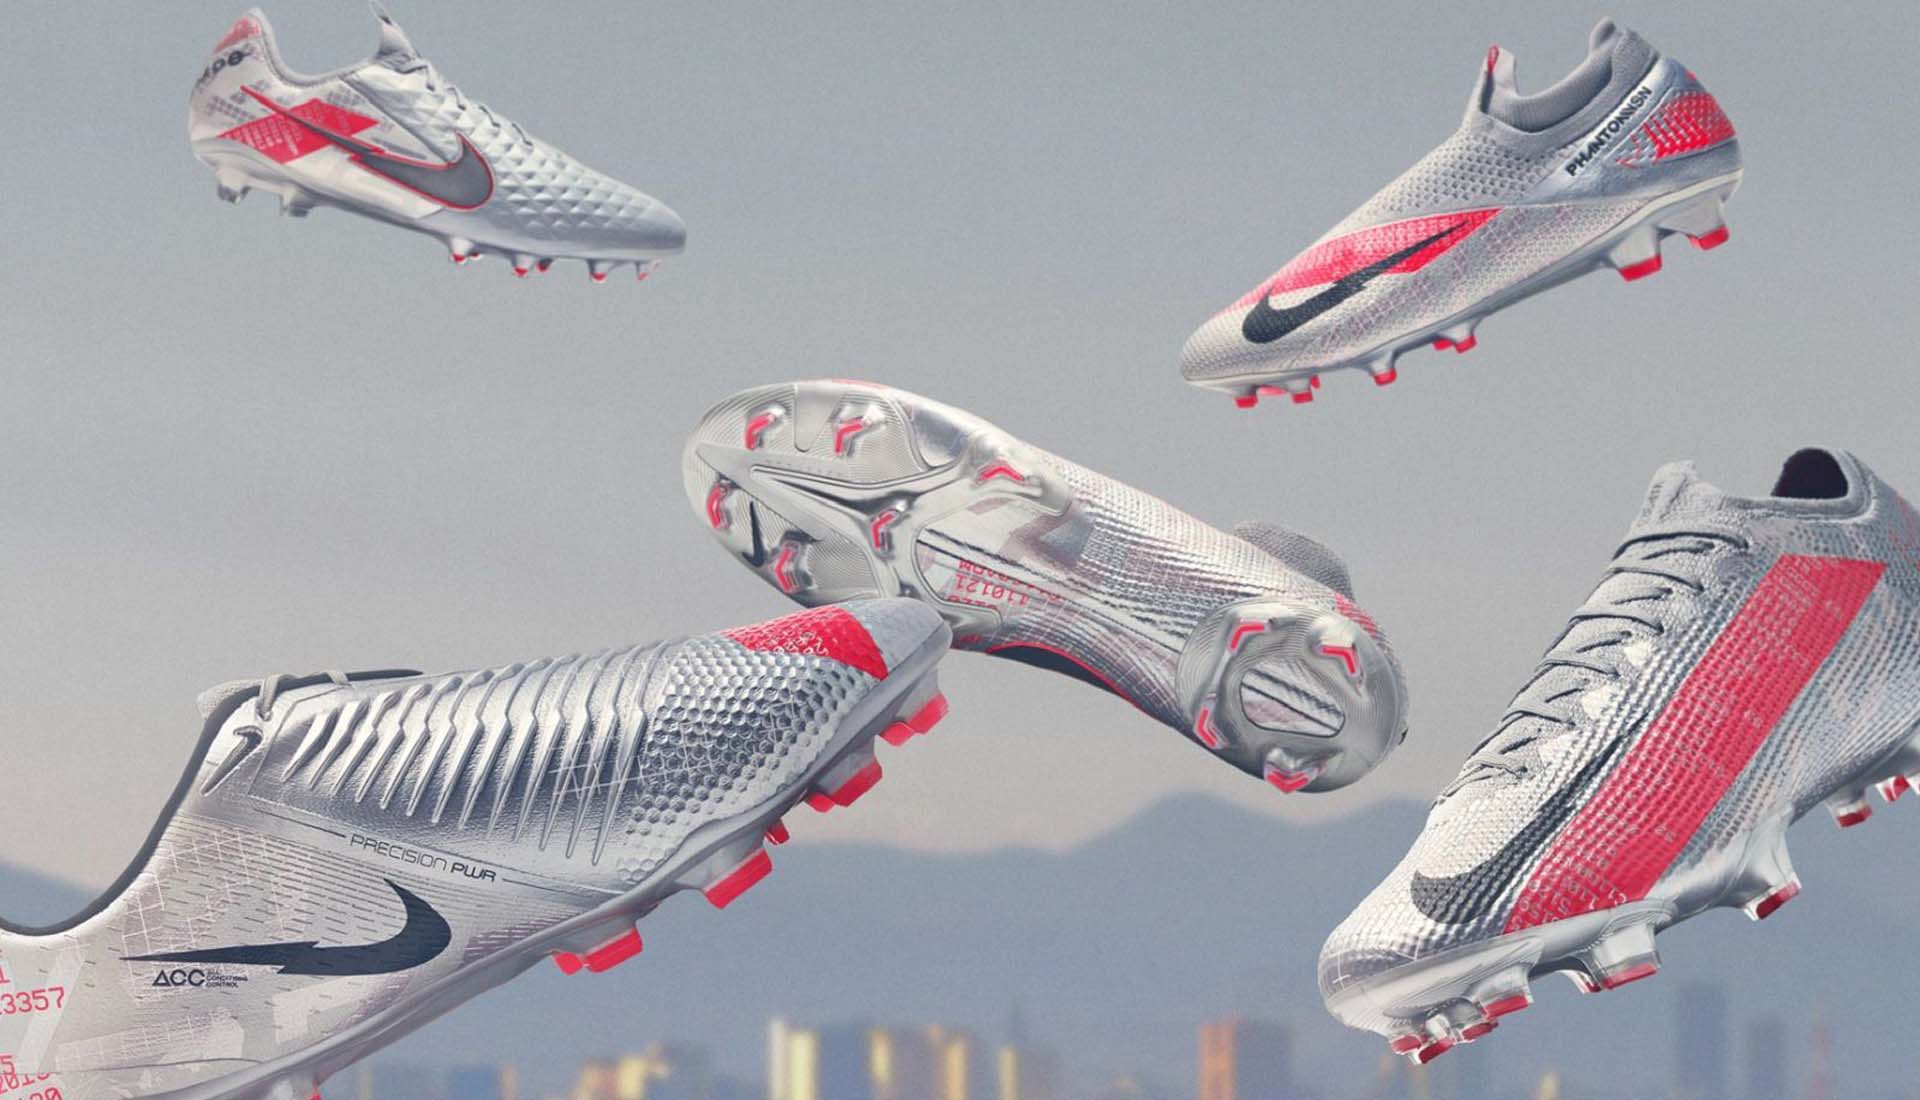 Thiết kế đẹp mắt của giày bóng đá Nike Euro 2020 Neighbourhood Pack